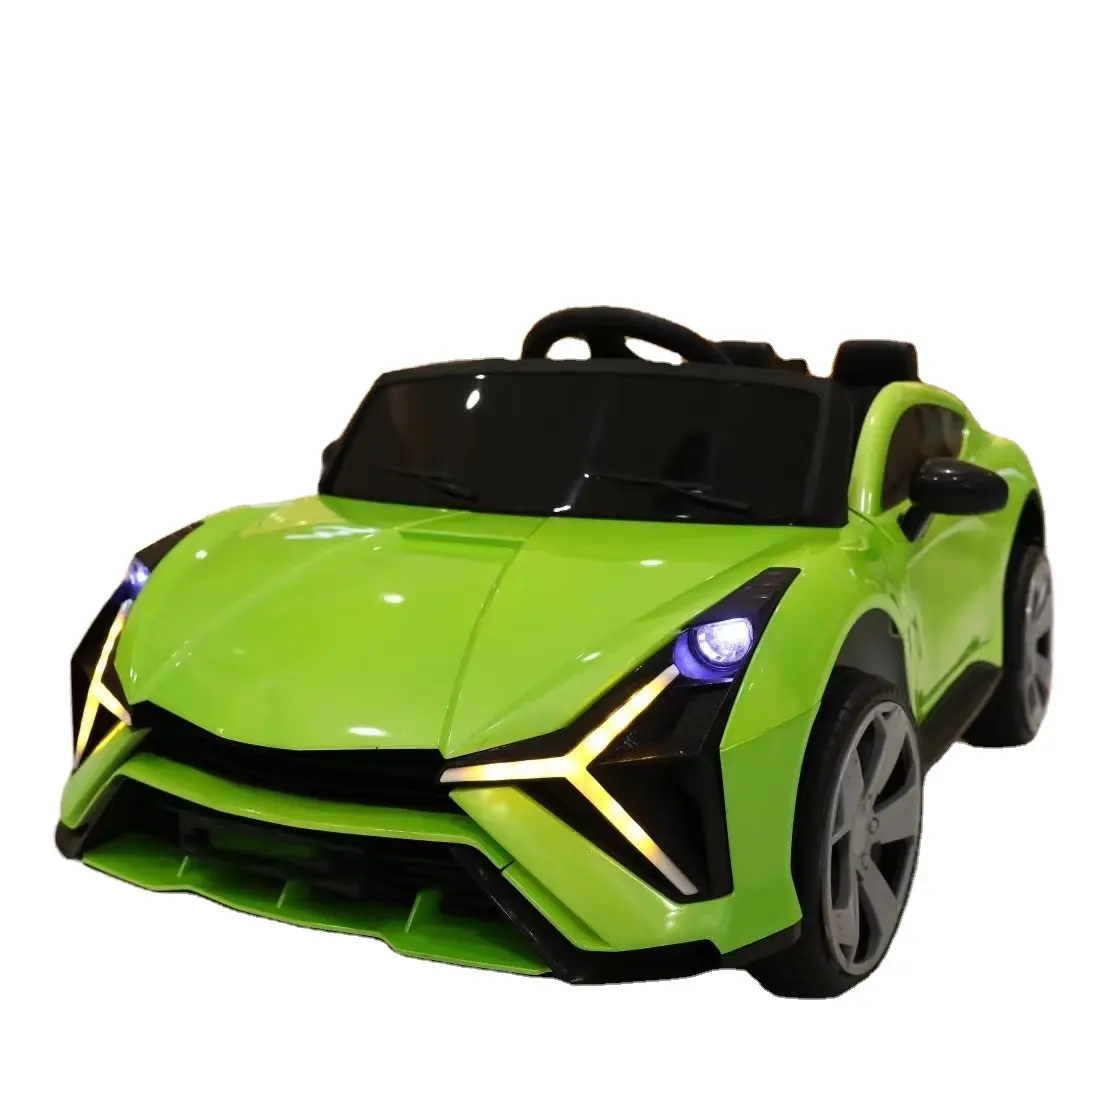 Carros de brinquedo para crianças, novo preço baixo, alimentado por bateria, carros de brinquedo de plástico